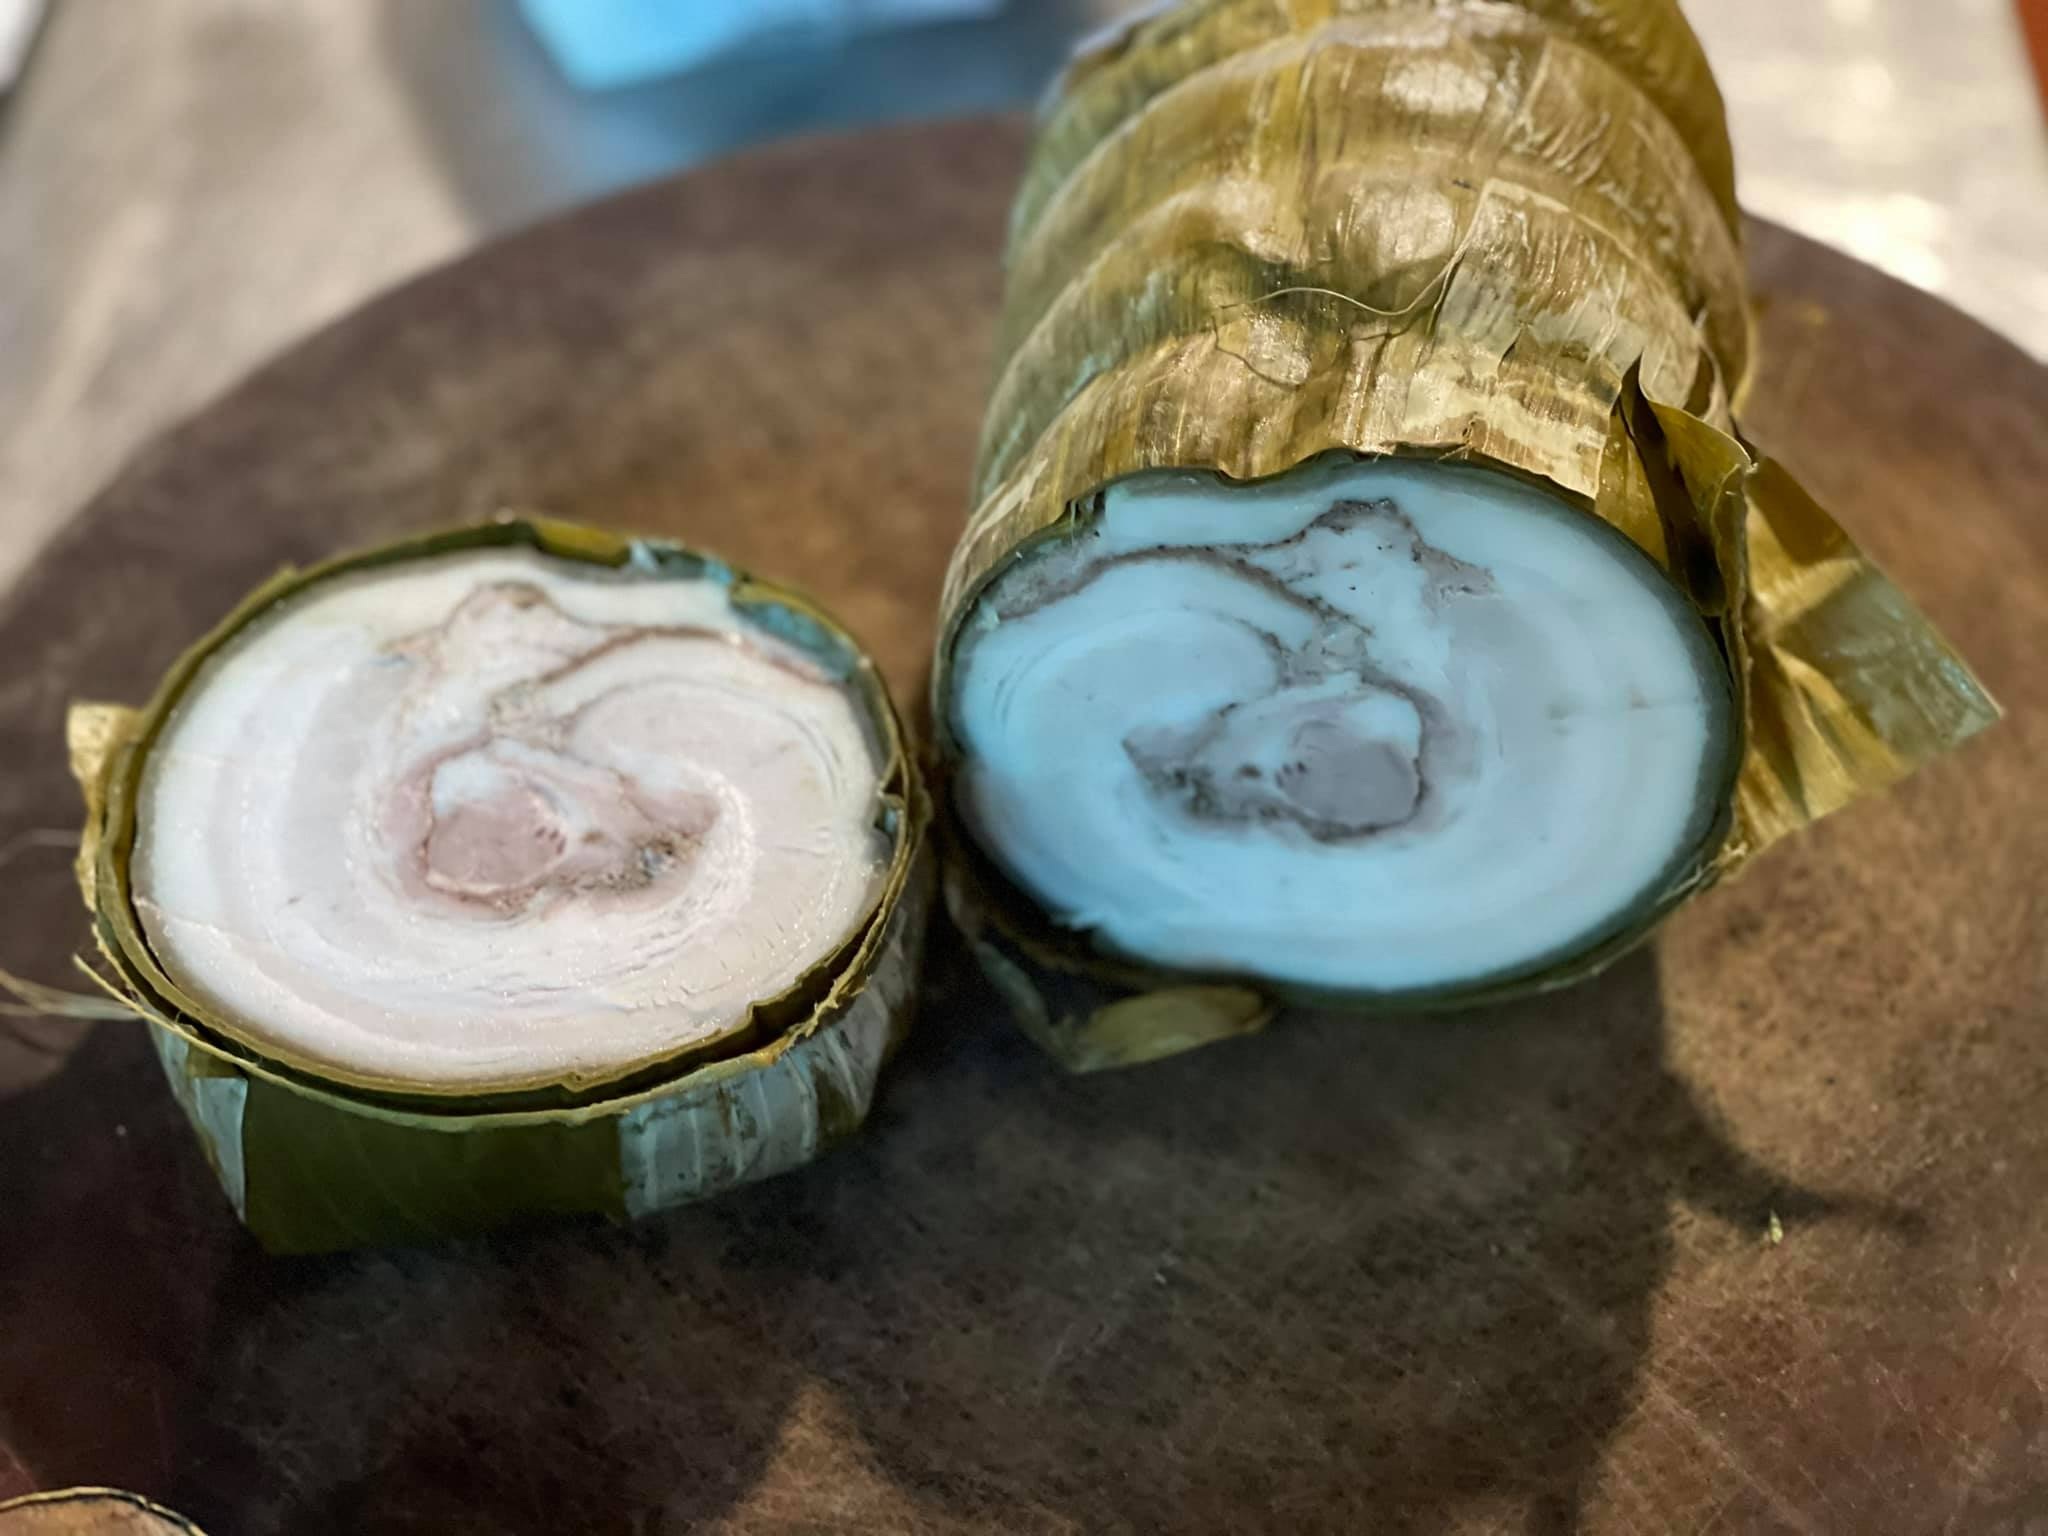 Lạ miệng đặc sản giải ngấy làm từ thịt nguyên tảng ở Thái Bình - 1